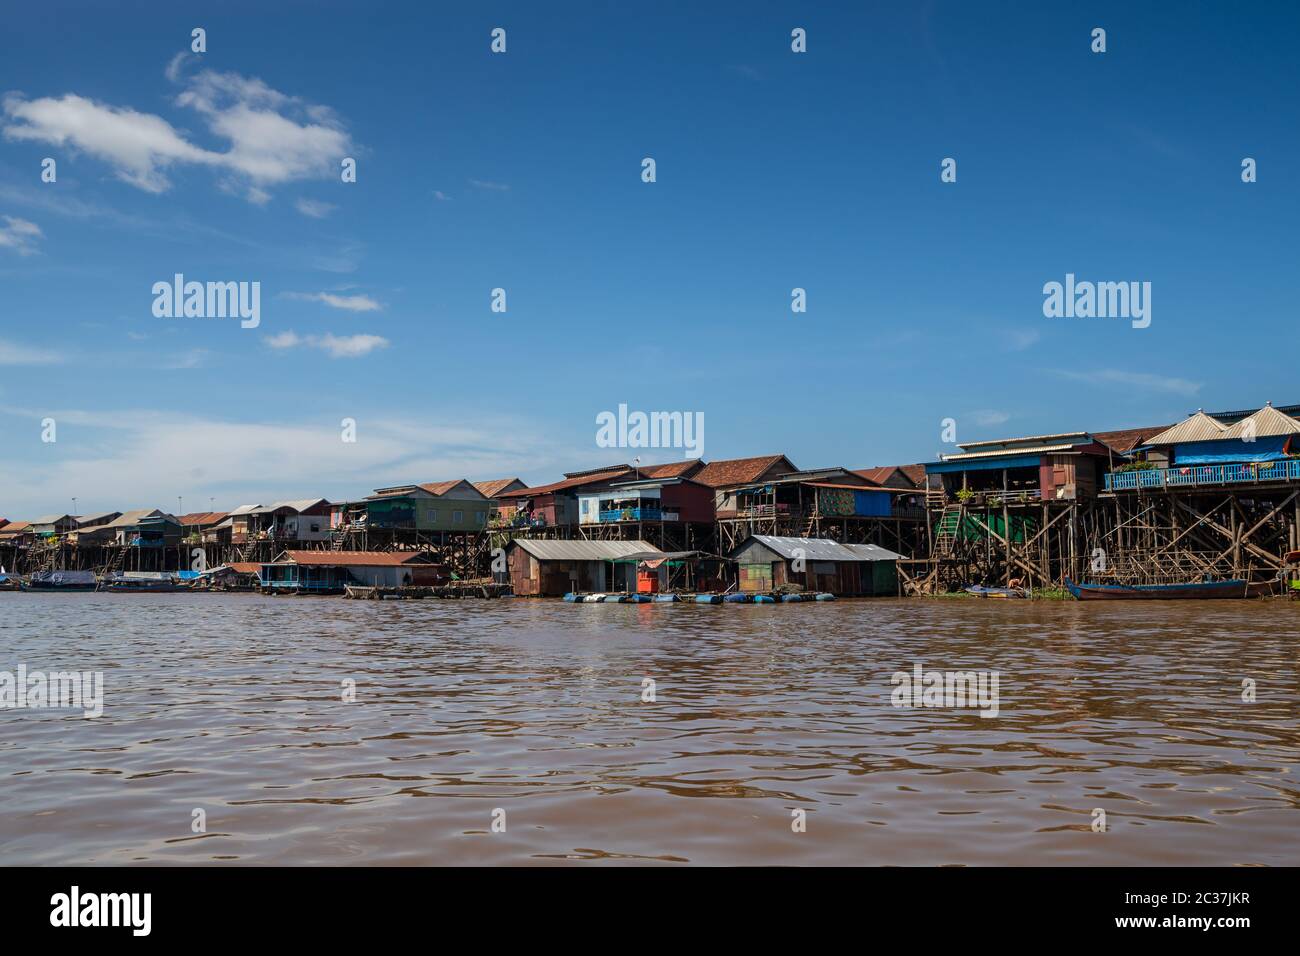 Kompong Khleang Floating Village at Lake Tonle Sap Cambodia Stock Photo